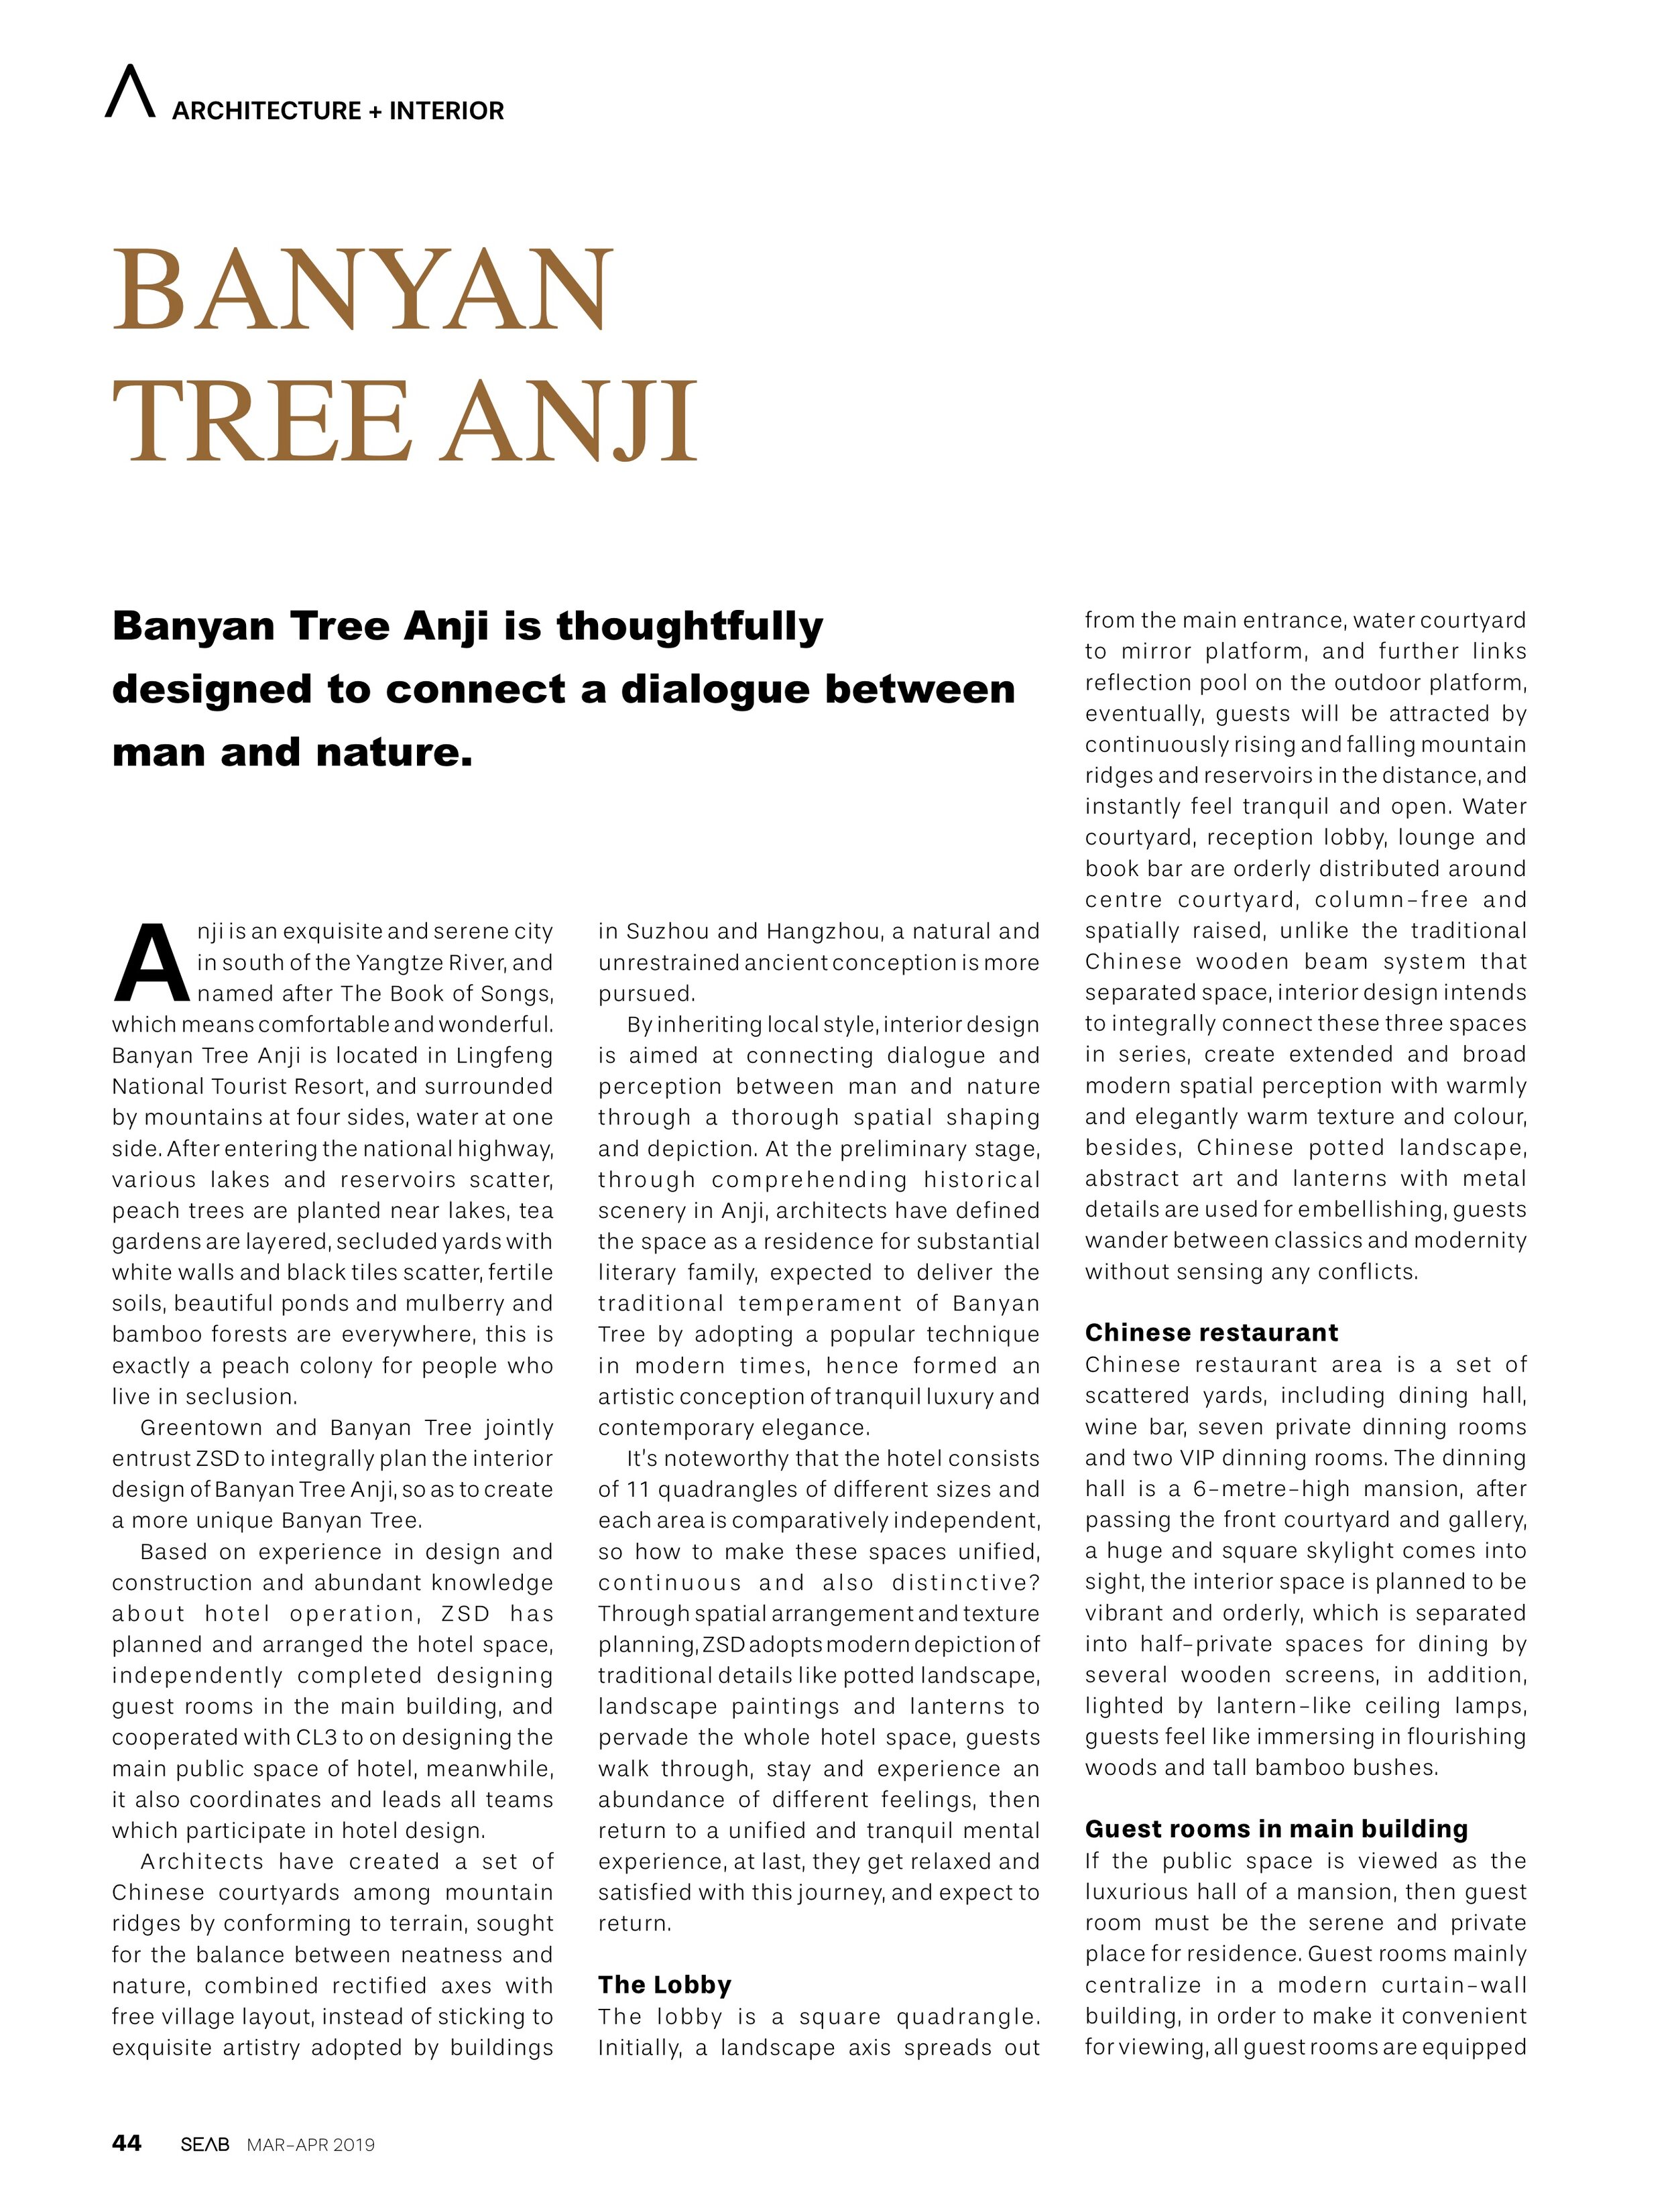 SEAB_Mar-Apr 2019_Banyan Tree Anji_P44-472.jpg